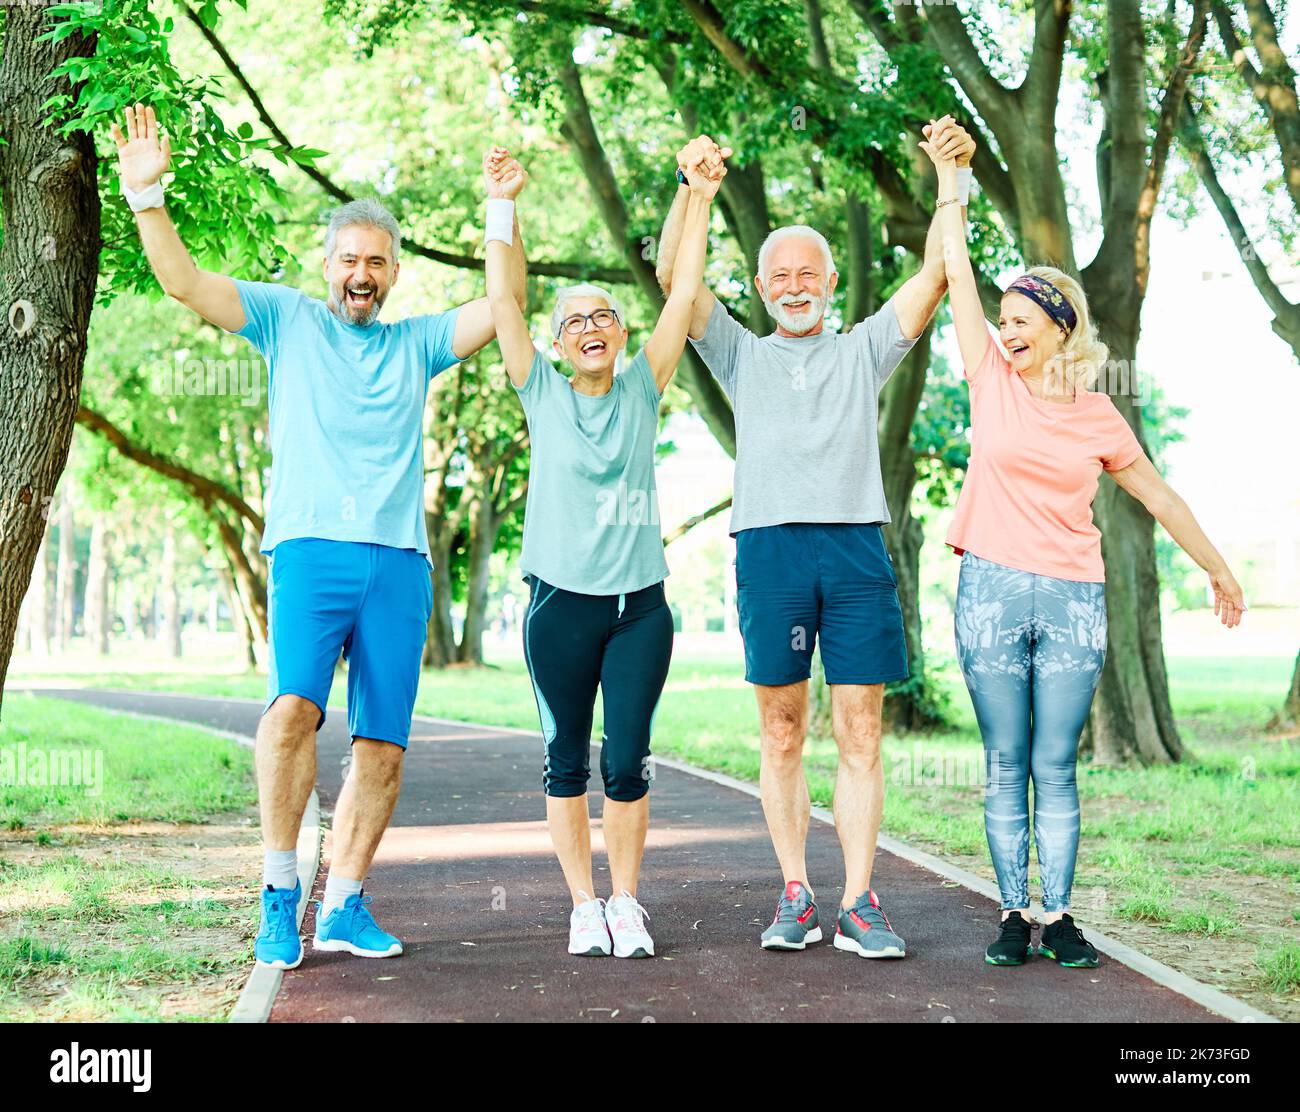 Outdoor Senior Fitness Frau Mann Lifestyle aktiver Sport Bewegung gesund fit Ruhestand Teamwork zusammen Hände haltend Stockfoto